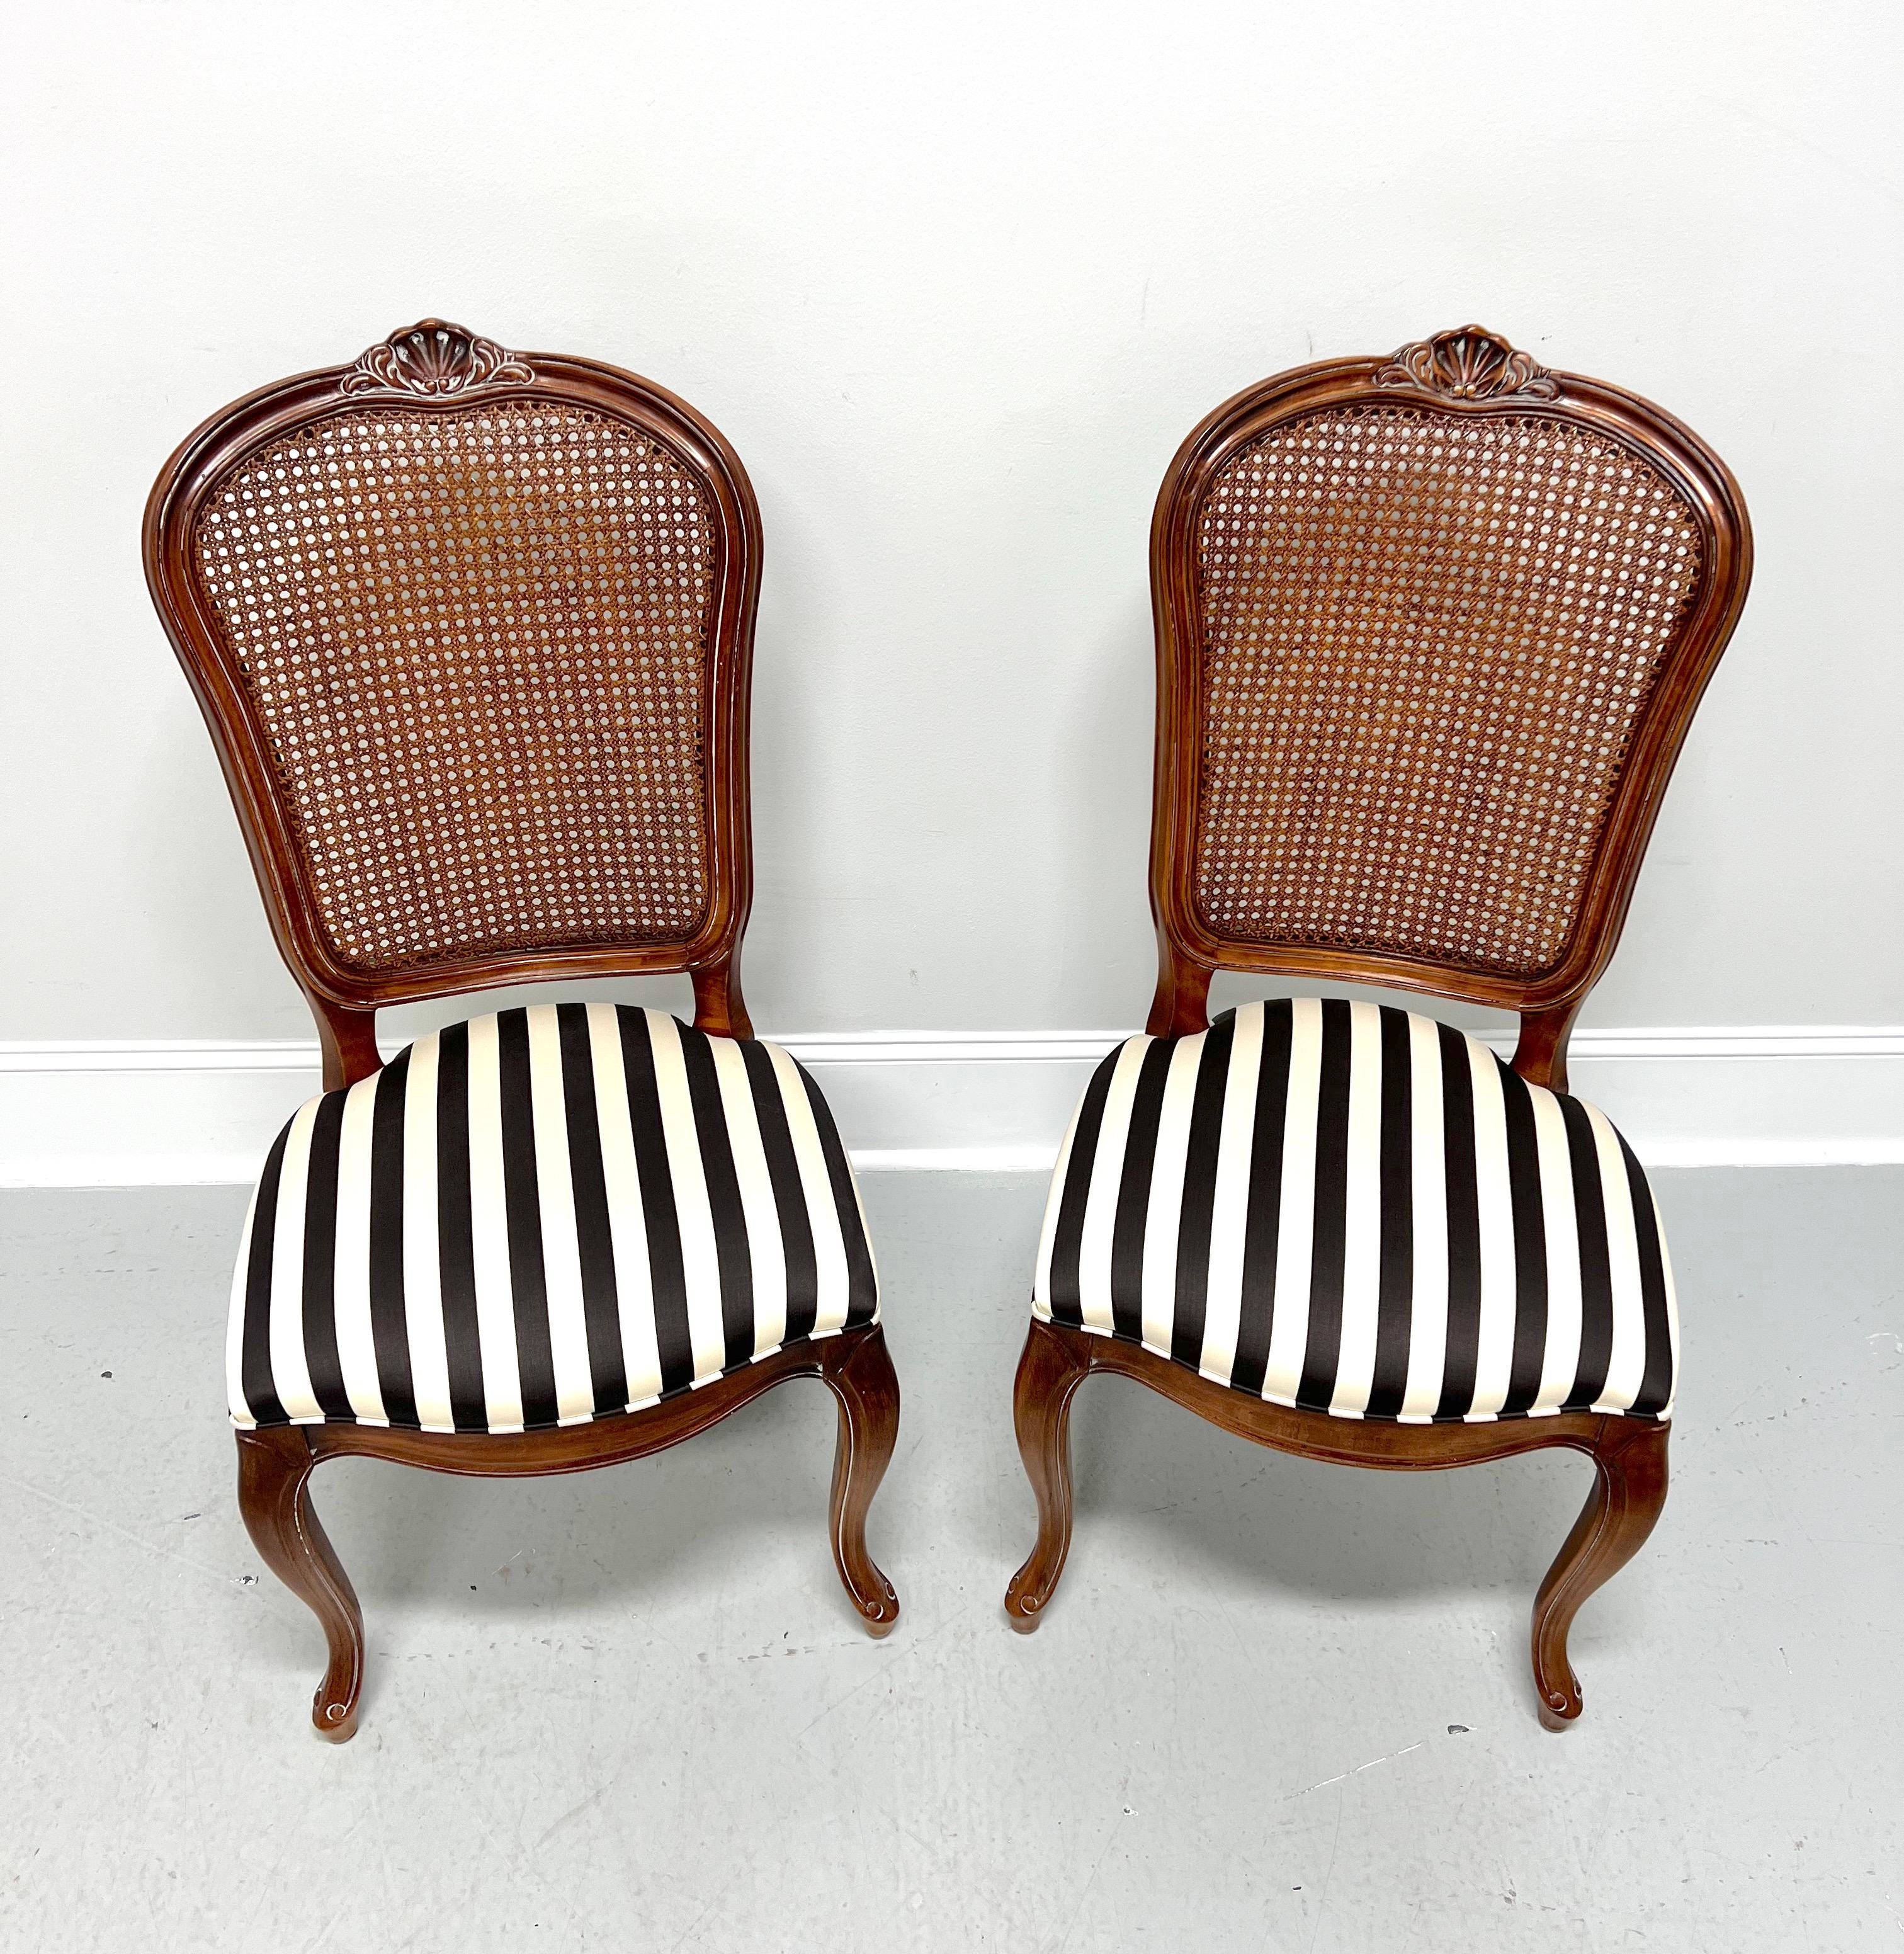 Ein Paar Esstischstühle im französischen Provinzialstil von Century Furniture aus der Chardeau Collection, entworfen von Raymond K. Sobota. Massives Kirschbaumholz, geschnitzte Details an der Kammleiste, Rohrgeflecht an der Rückenlehne, gepolsterte